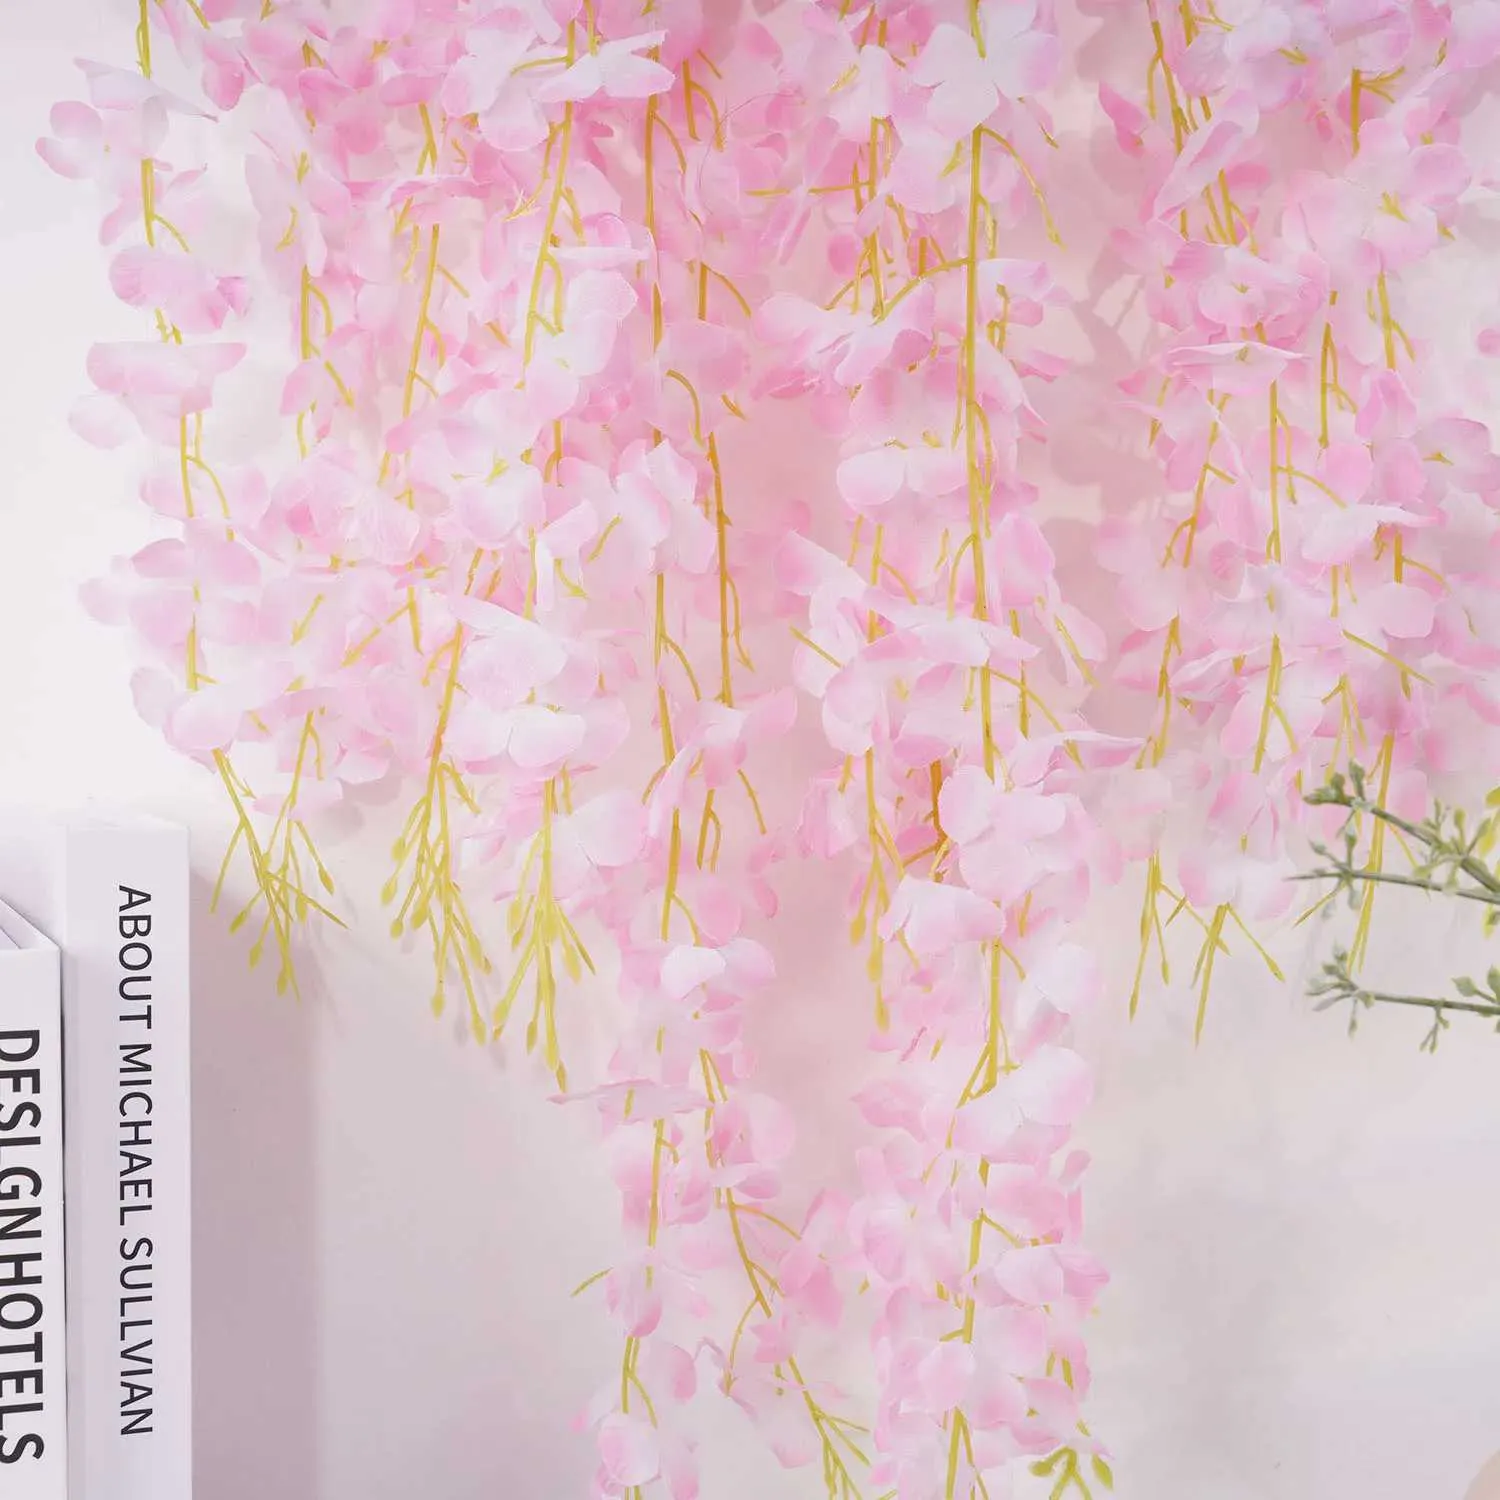 Flores decorativas grinaldas de 110 cm Wisteria Vine Flowers Artificial